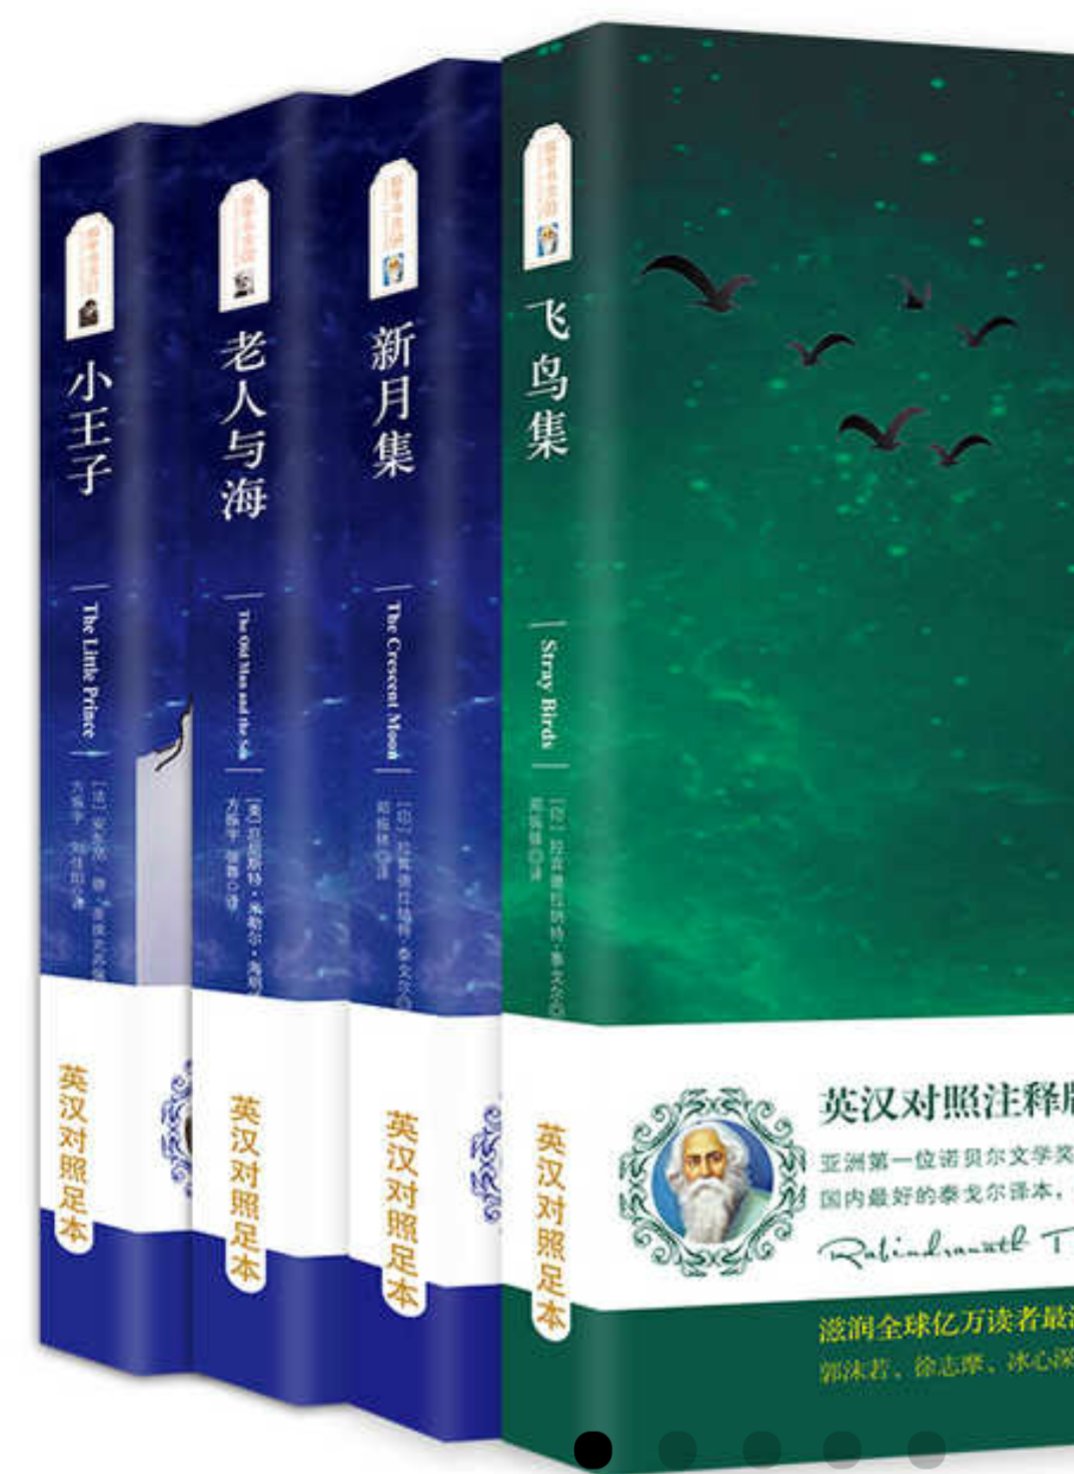 汉语翻译和原文配套，装帧精美，就是价格稍高了些。